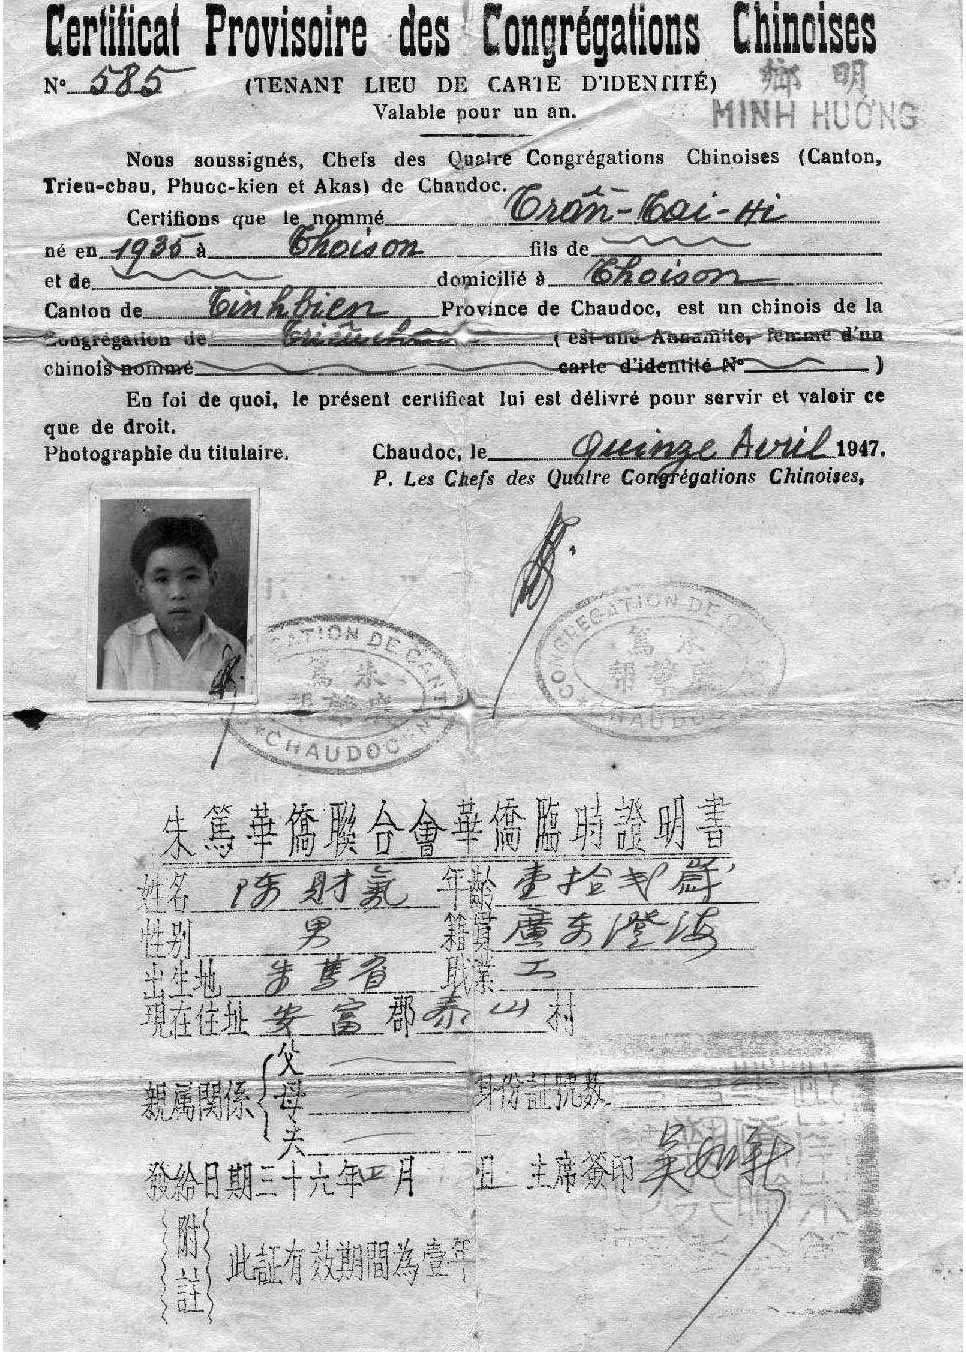 1947年越南朱笃华侨联合会华侨临时证明书